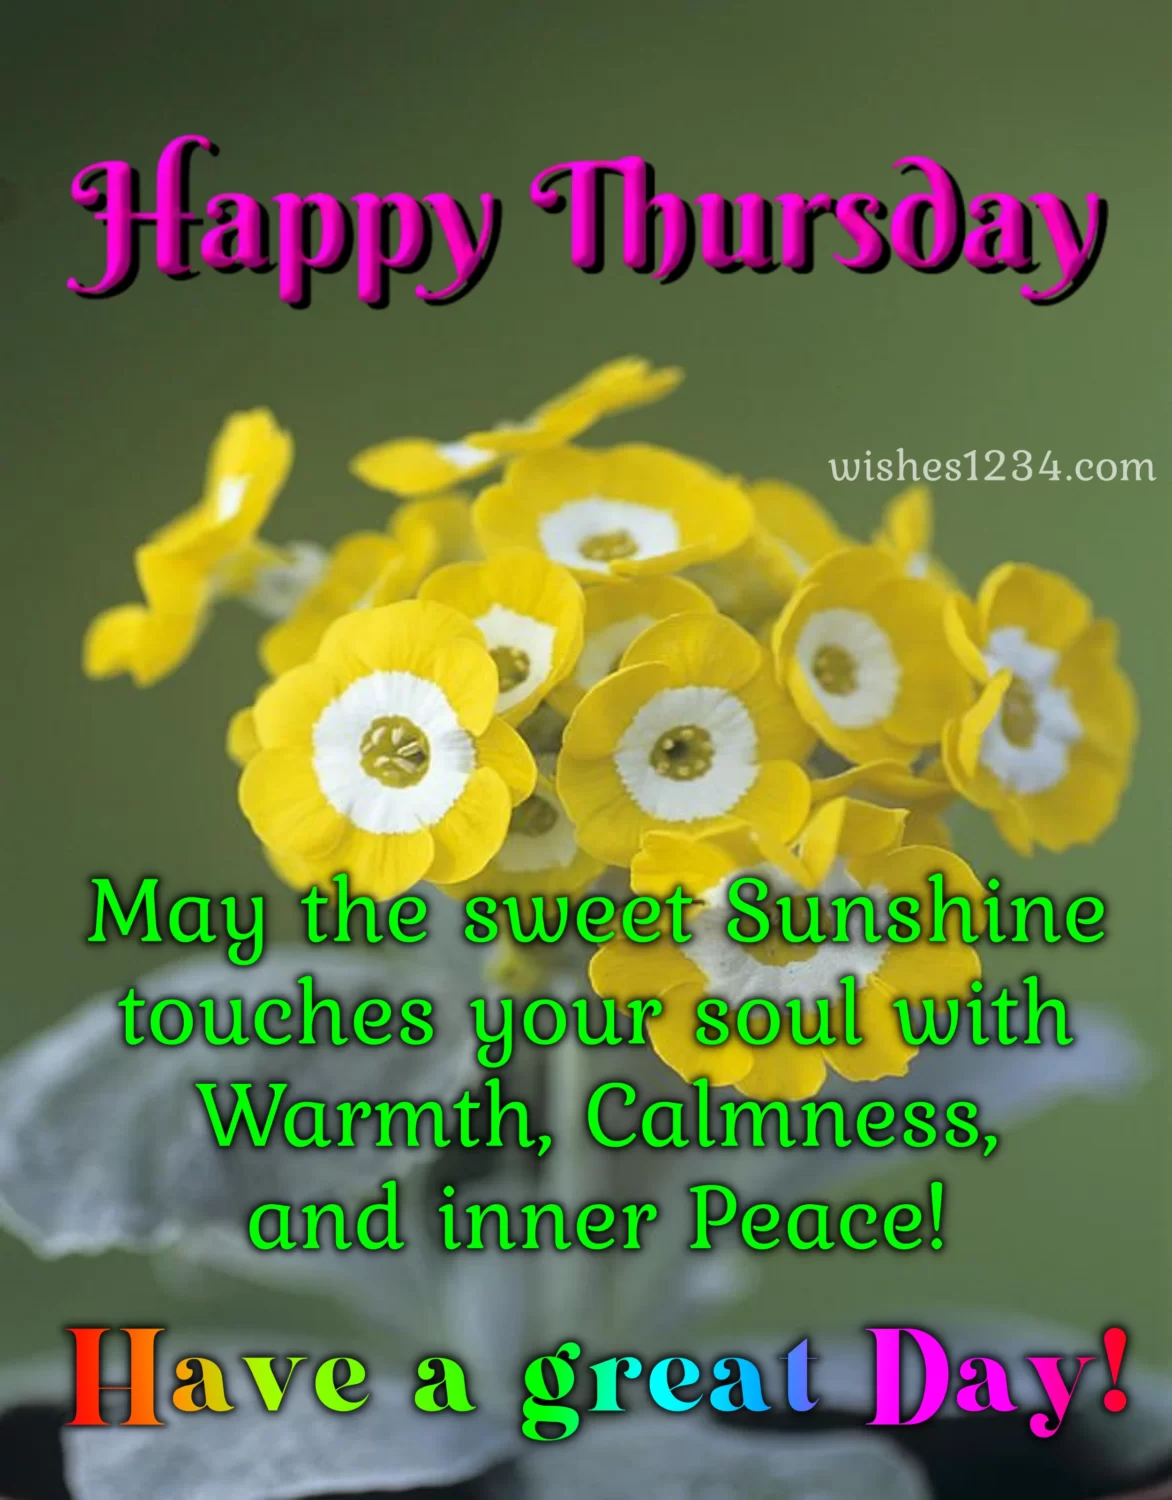 Happy thursday with golden flee flowers, Thursday Blessings.